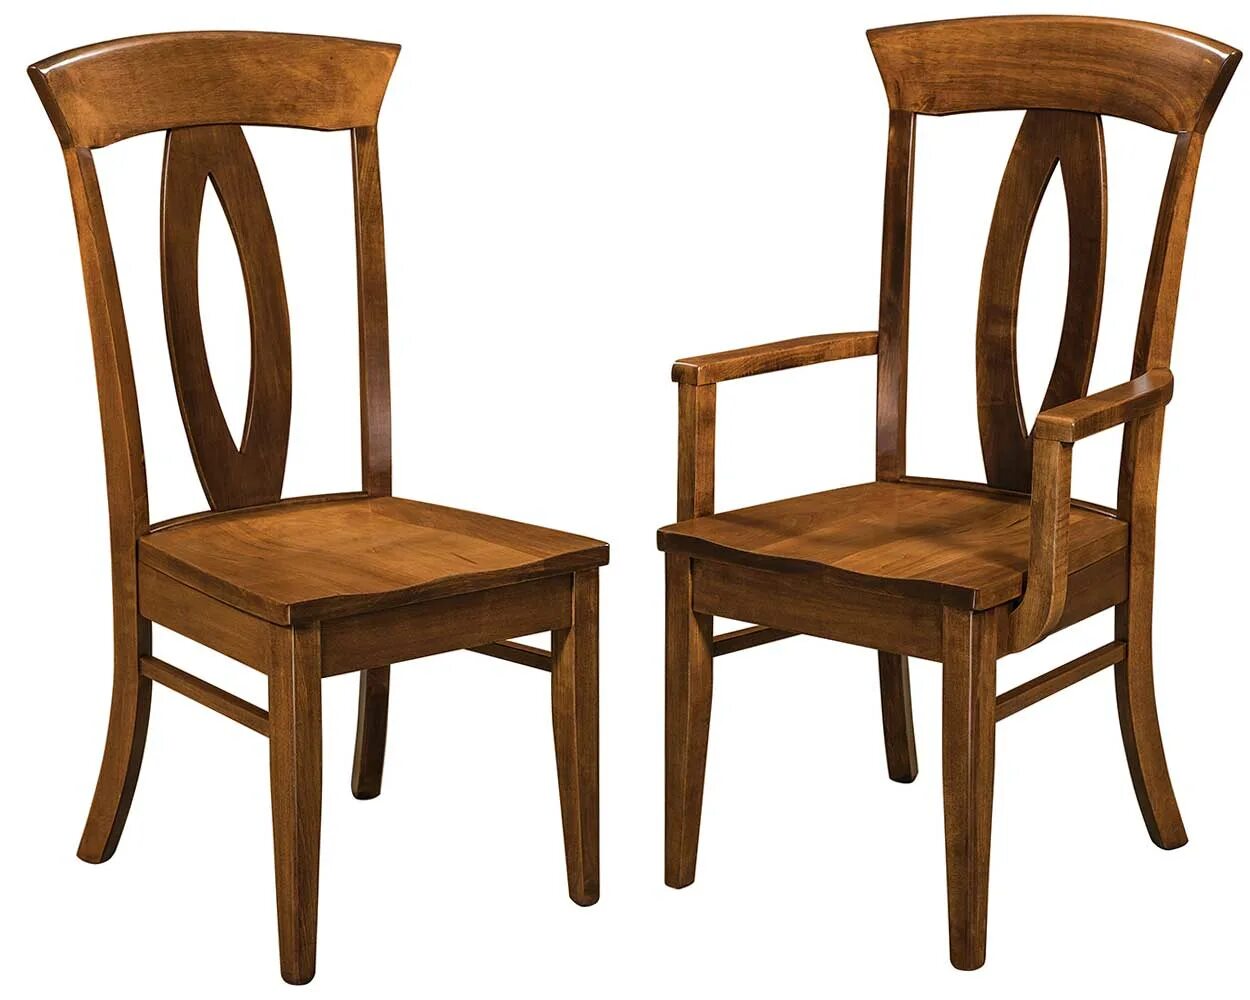 Стул деревянный. Красивые деревянные стулья. Стул дубовый. Стул из дуба. Стулья купить в спб распродажа